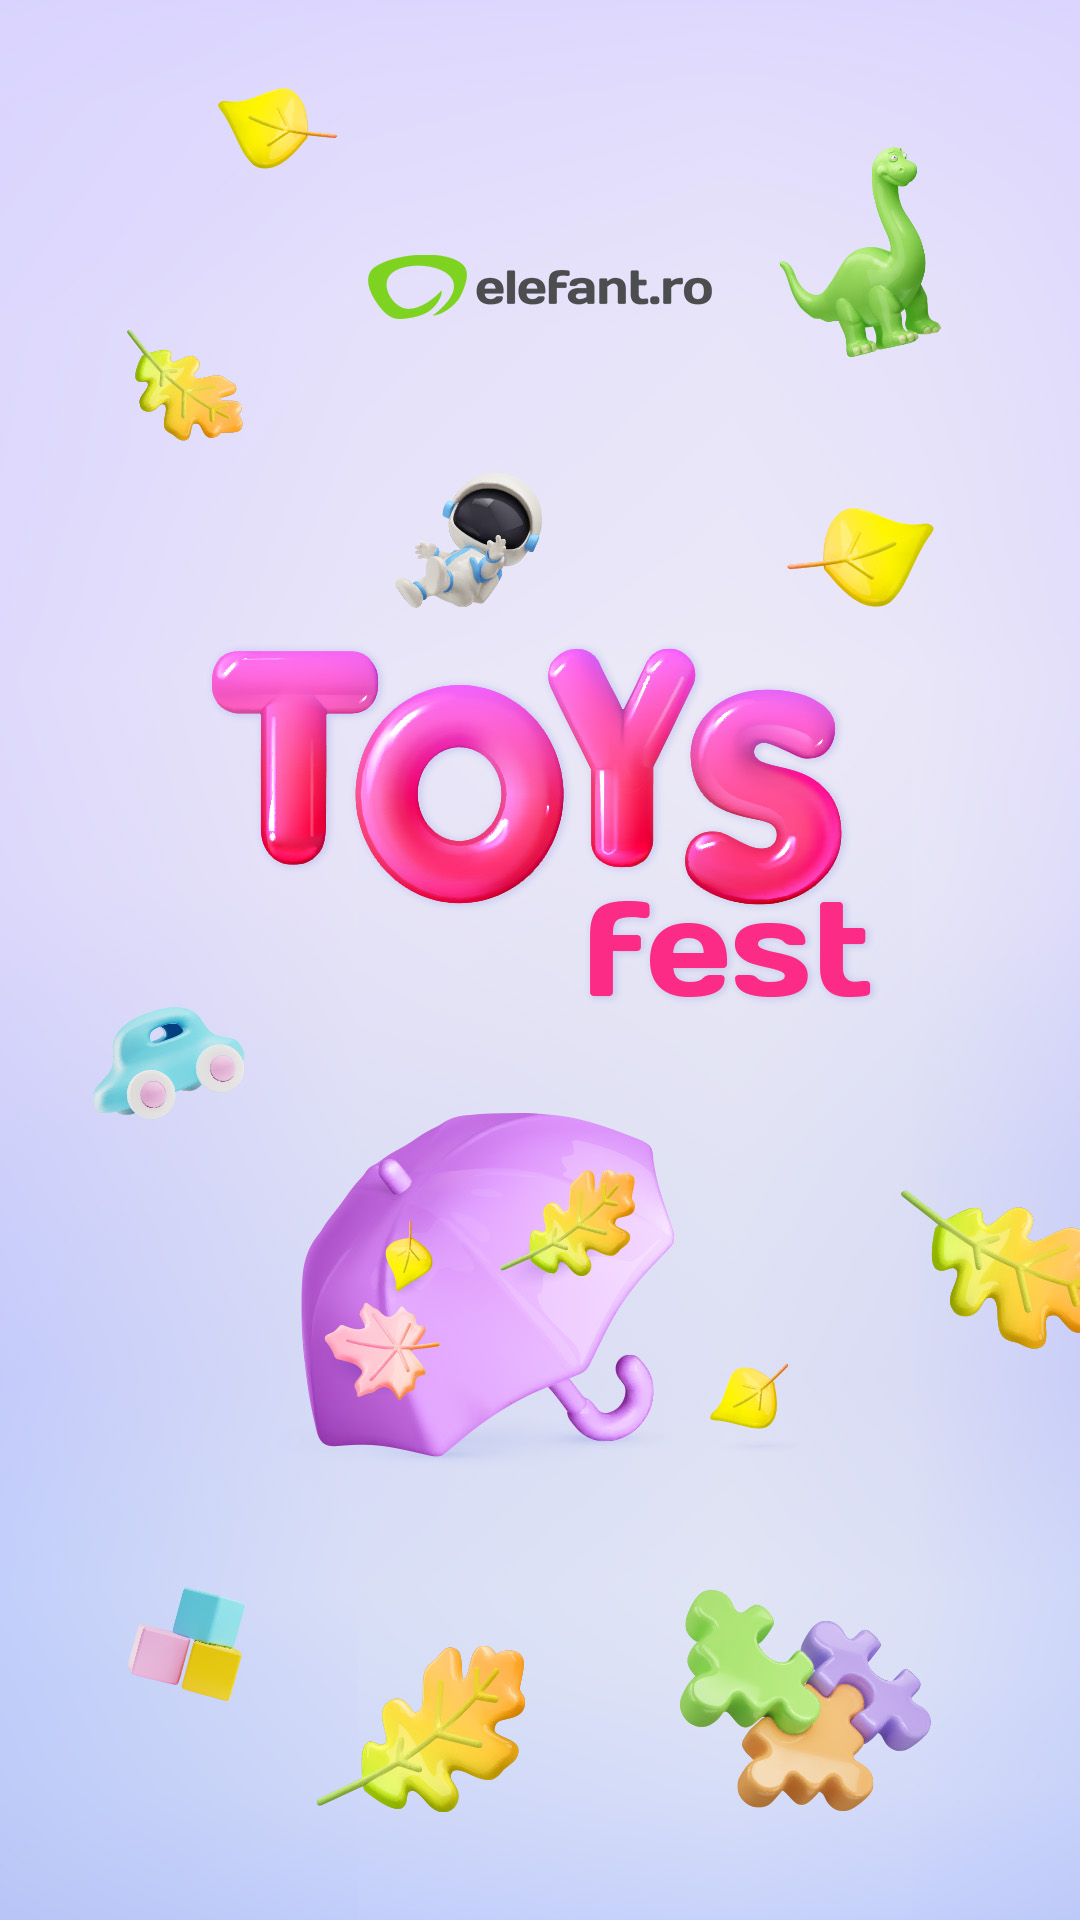 Toys Fest cu prețuri speciale la mii de jucării